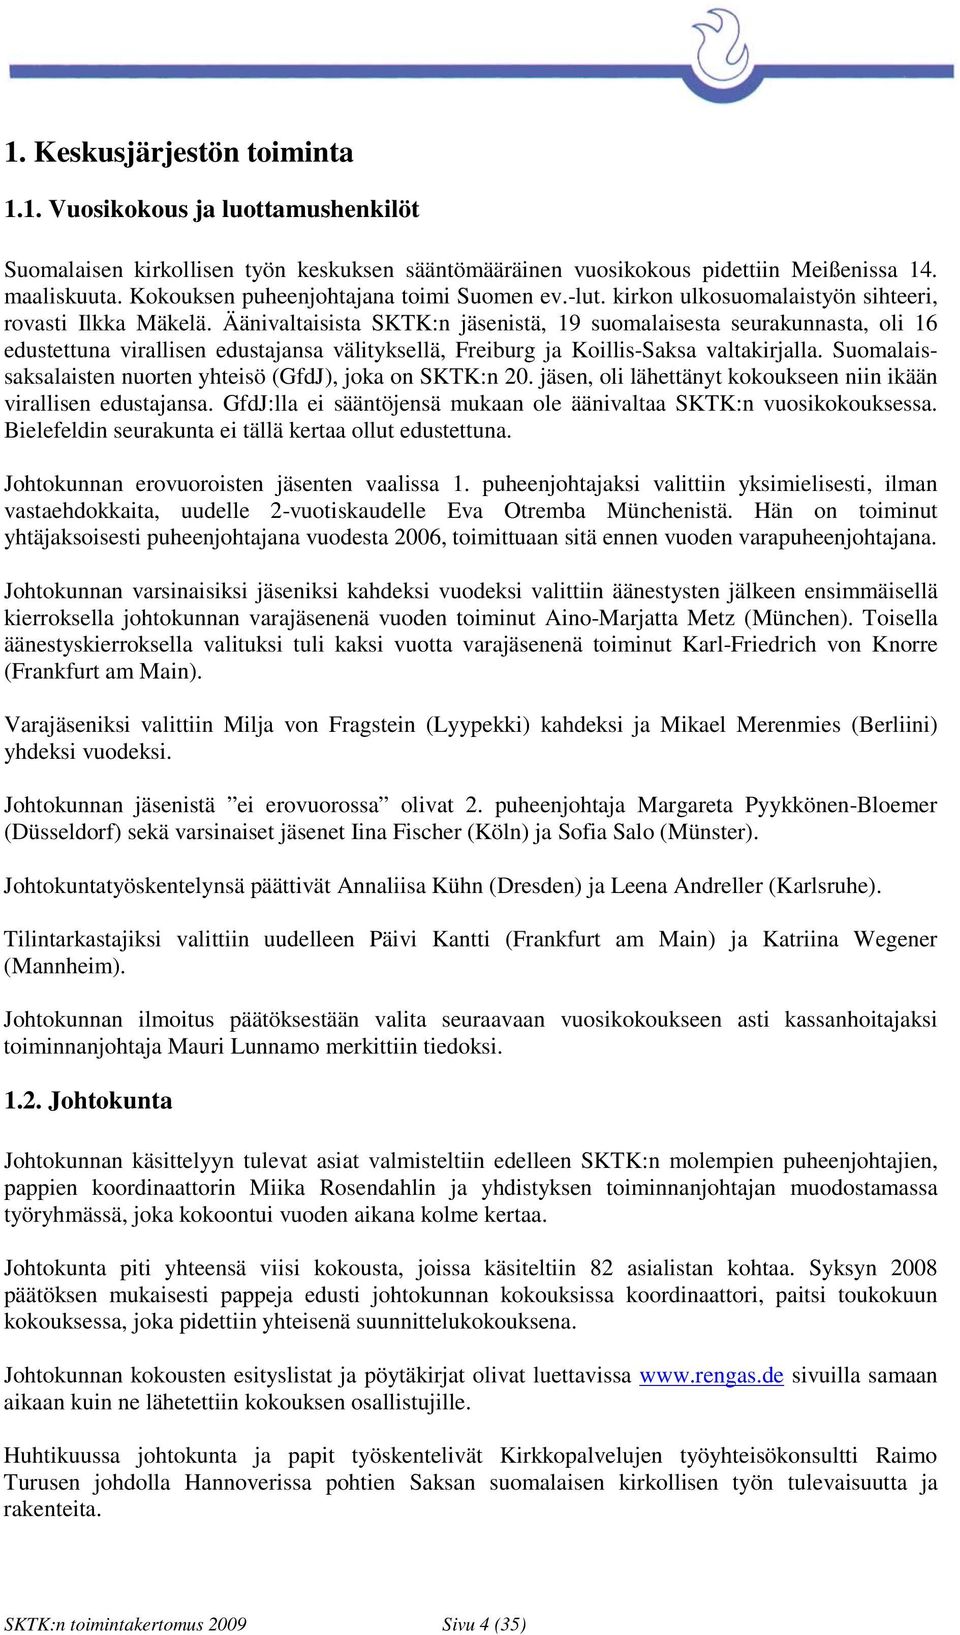 Äänivaltaisista SKTK:n jäsenistä, 19 suomalaisesta seurakunnasta, oli 16 edustettuna virallisen edustajansa välityksellä, Freiburg ja Koillis-Saksa valtakirjalla.